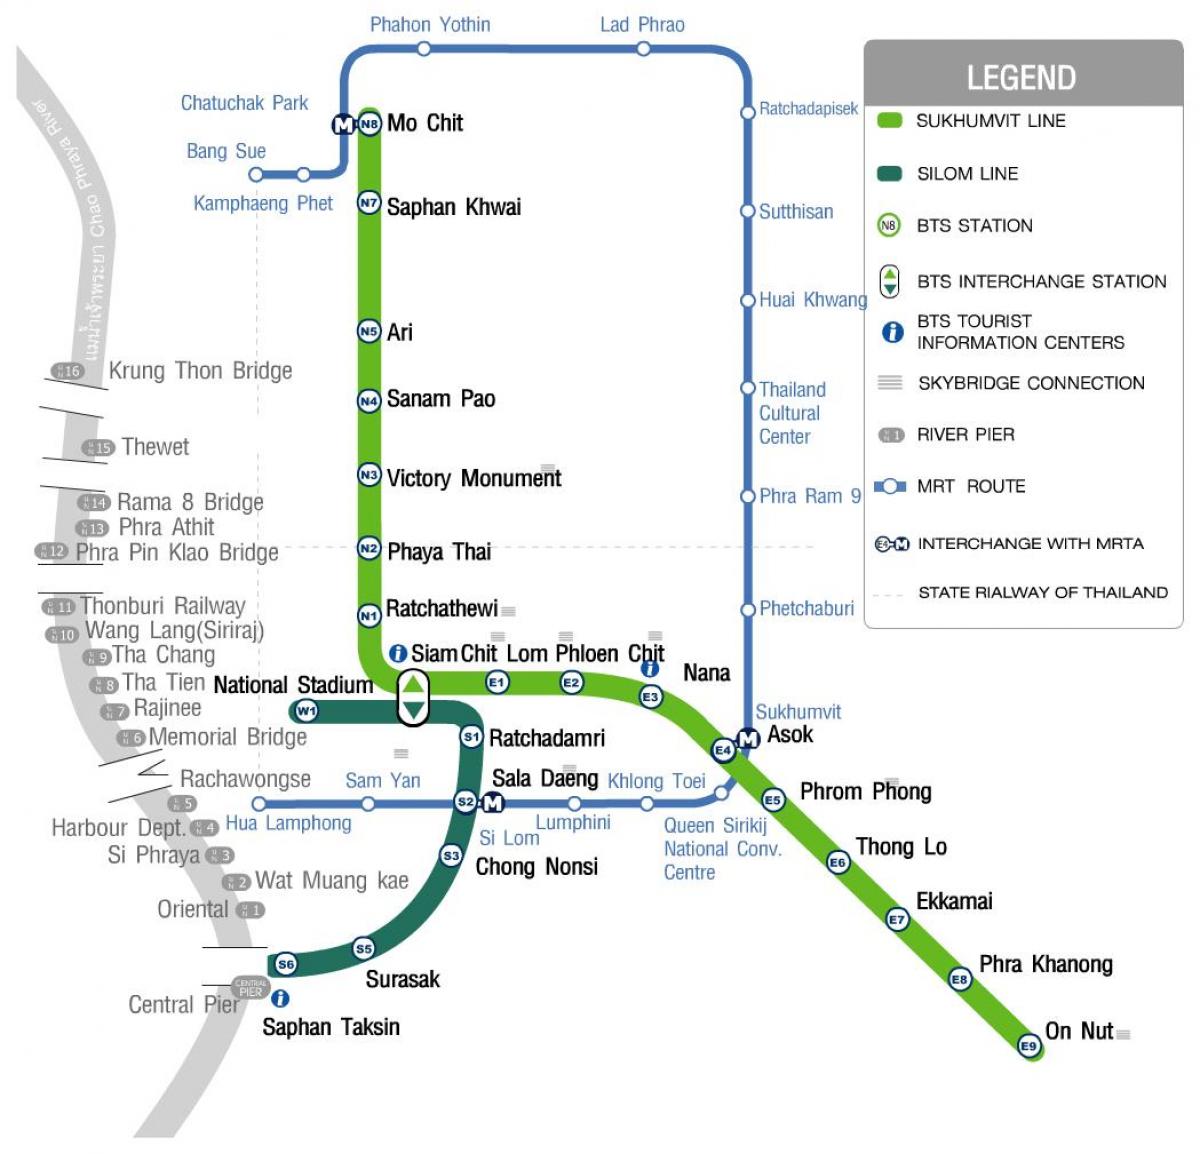 bkk skytrain کی طرف اشارہ نقشہ